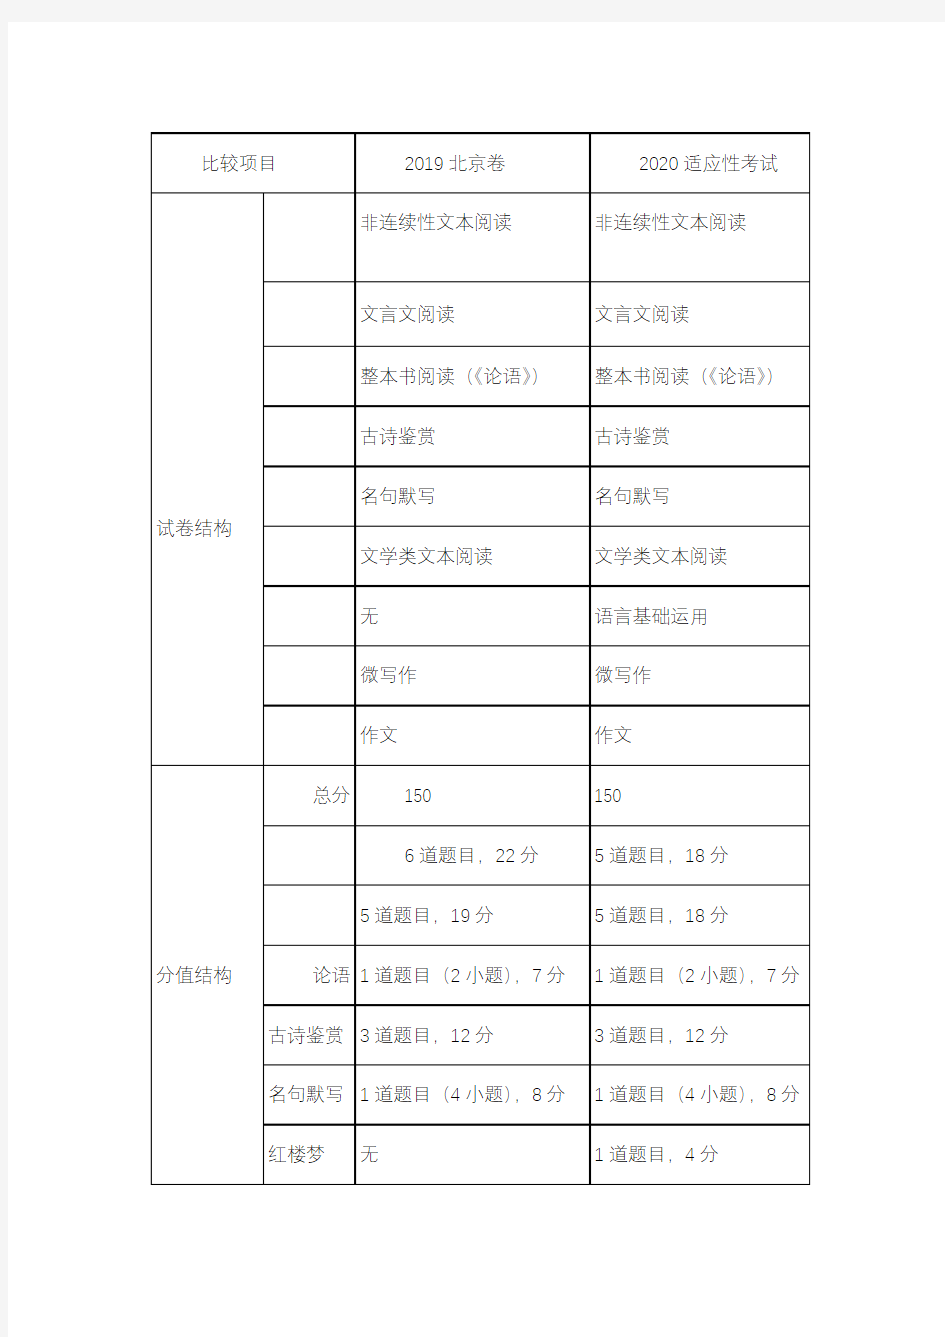 语文2020年北京新高考变化分析(语文)-1